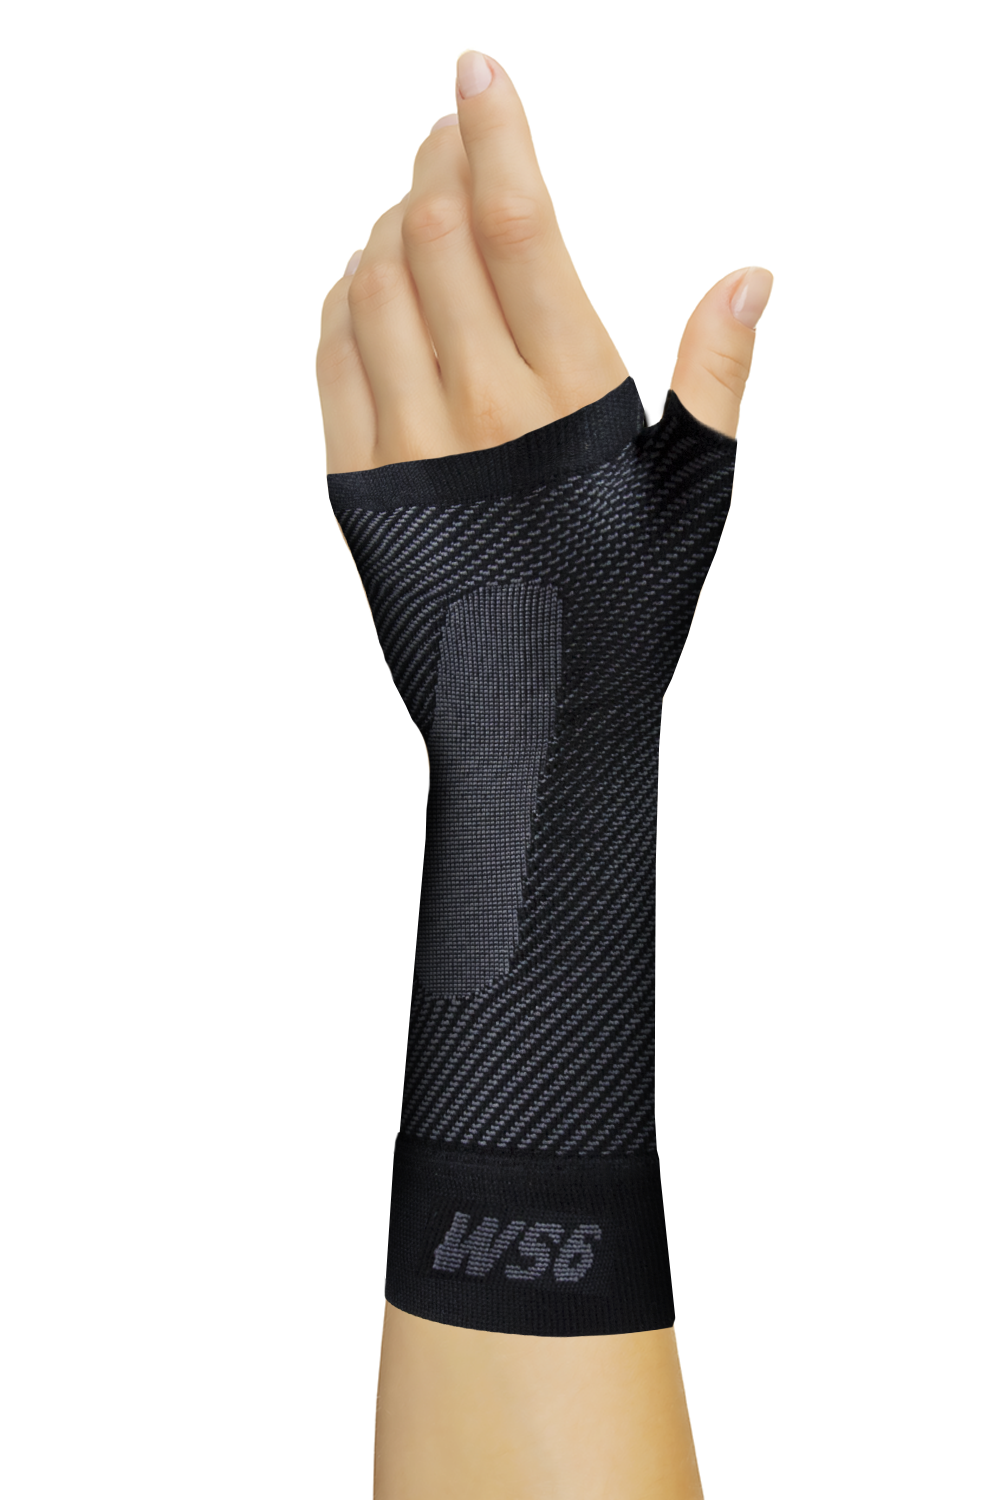 Orthosleeve Ws6 Wrist Sleeve Black Medium image 0